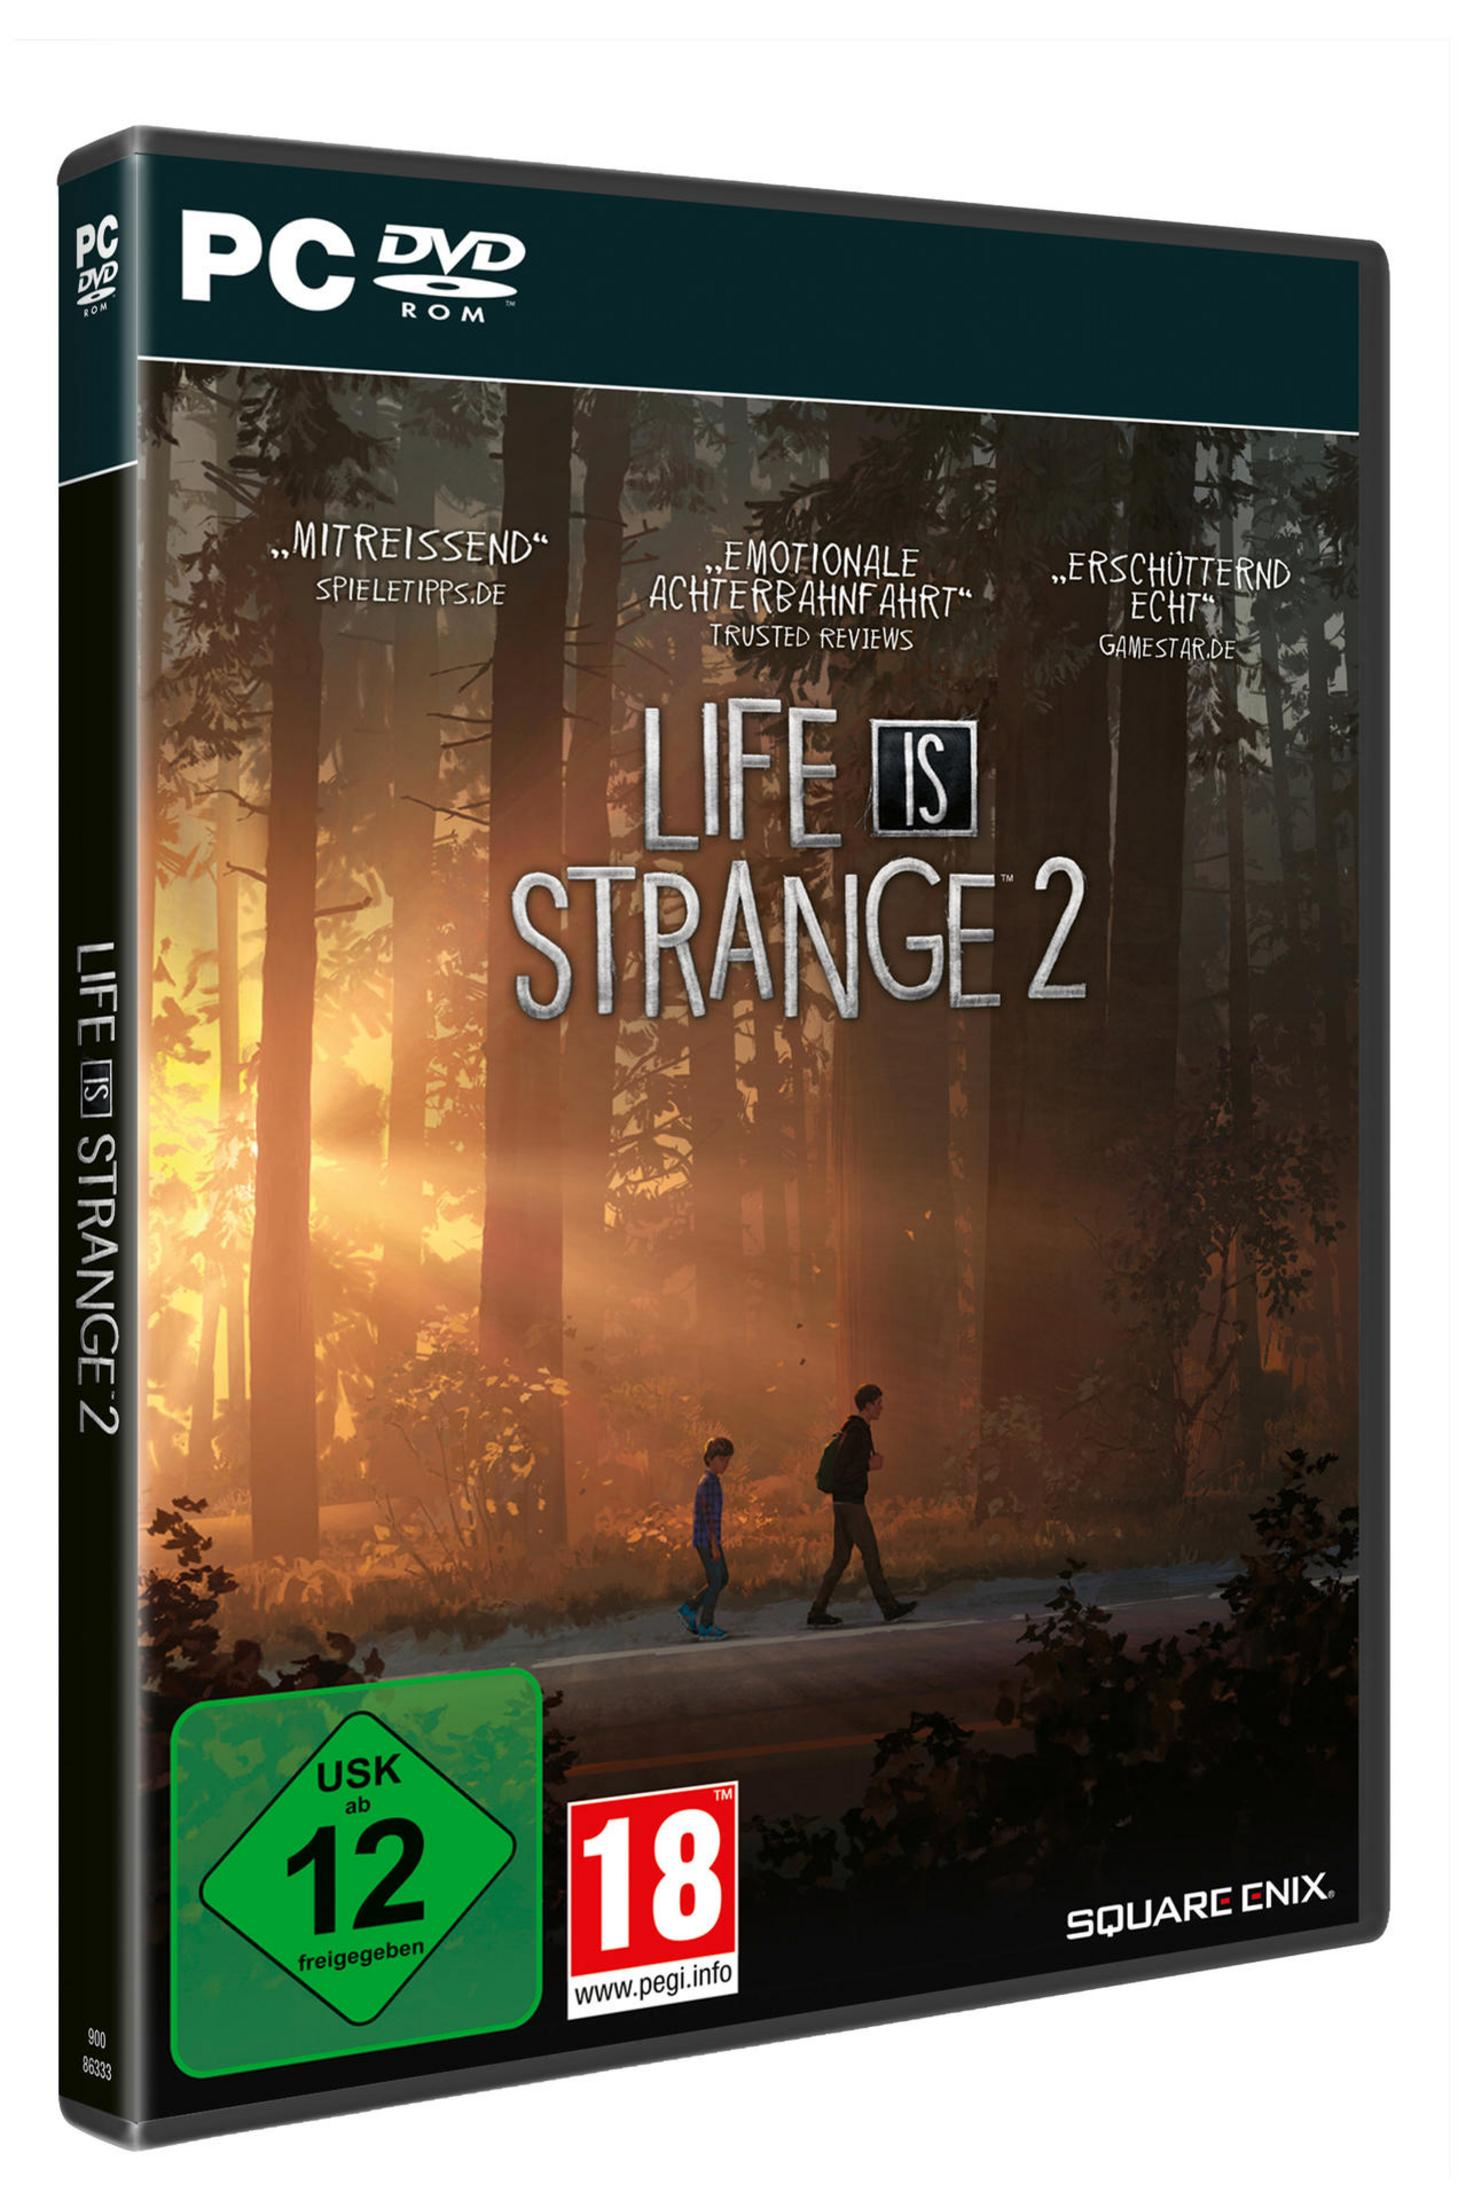 2 Strange is Life [PC] -